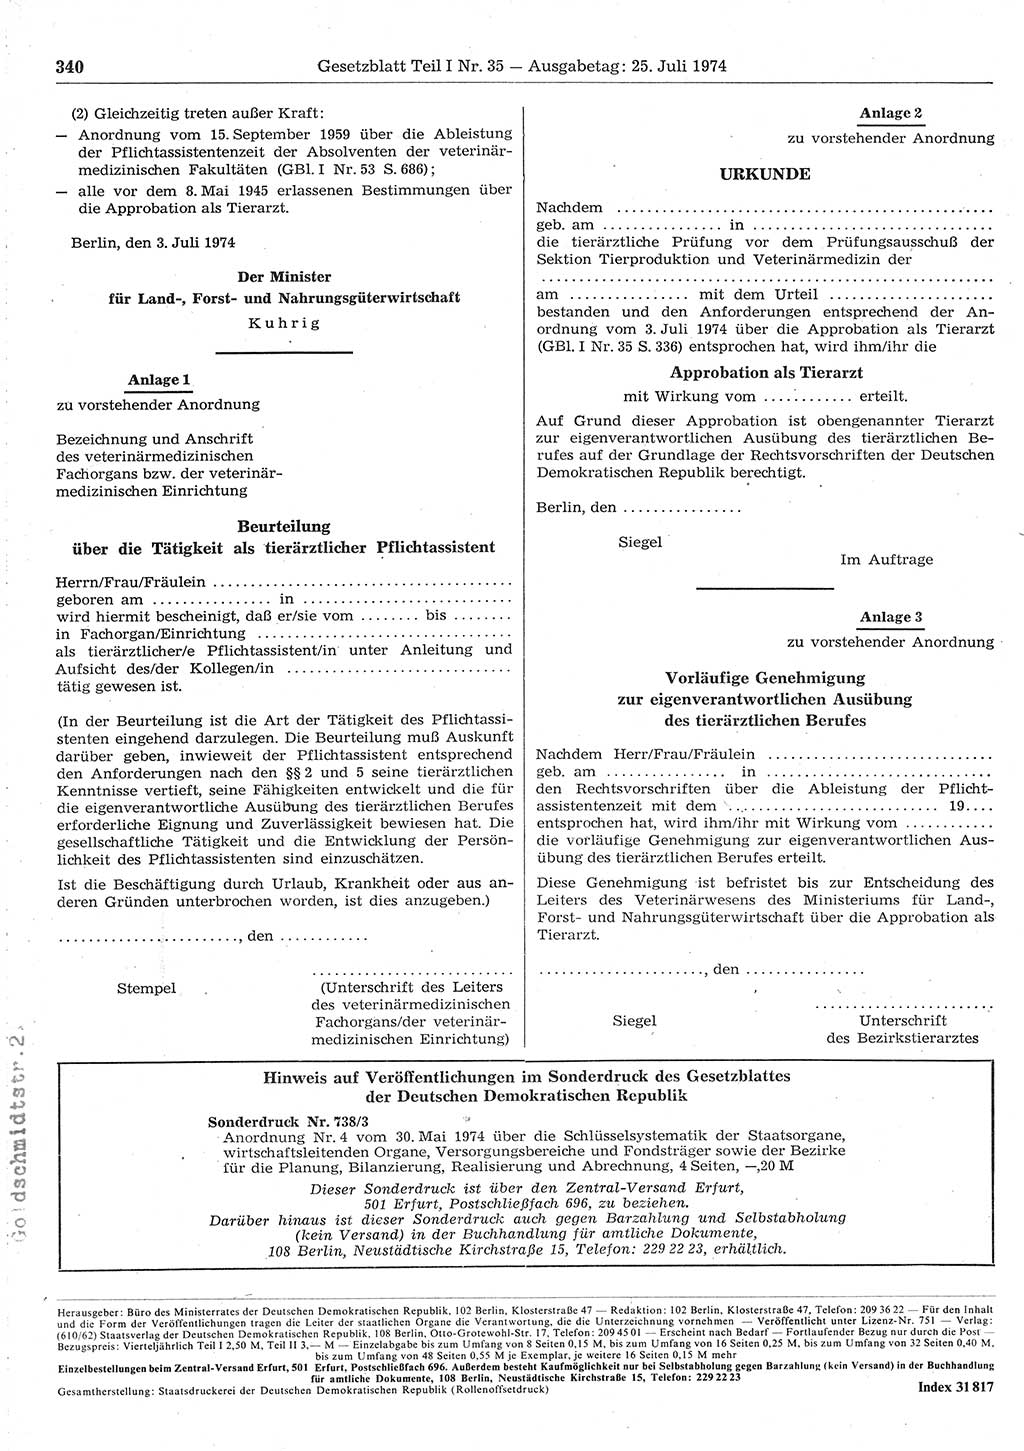 Gesetzblatt (GBl.) der Deutschen Demokratischen Republik (DDR) Teil Ⅰ 1974, Seite 340 (GBl. DDR Ⅰ 1974, S. 340)